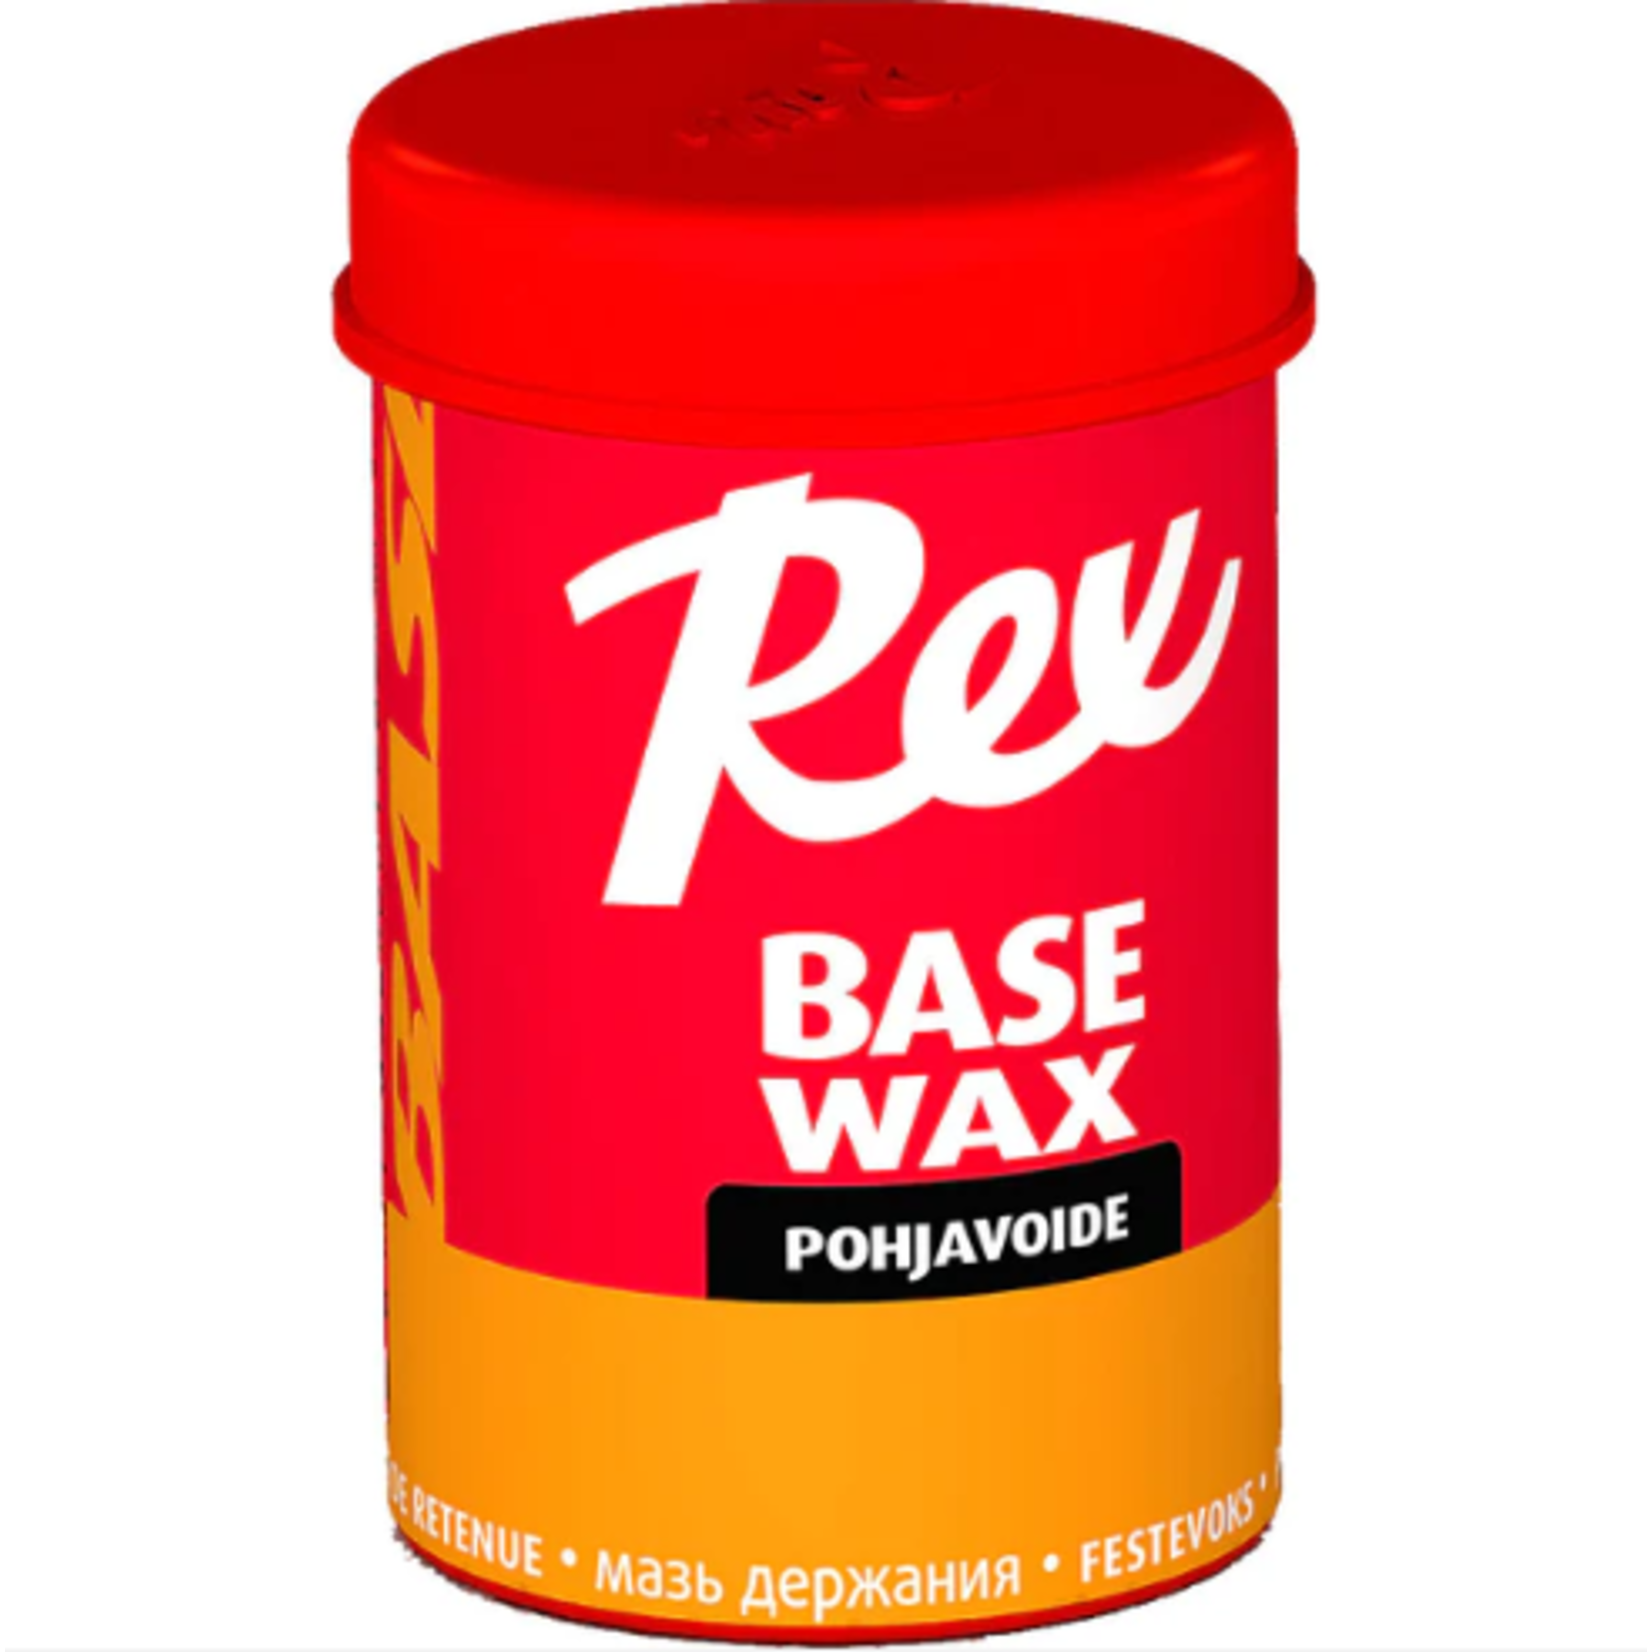 Rex Basic Grip Orange Base Wax | 45g